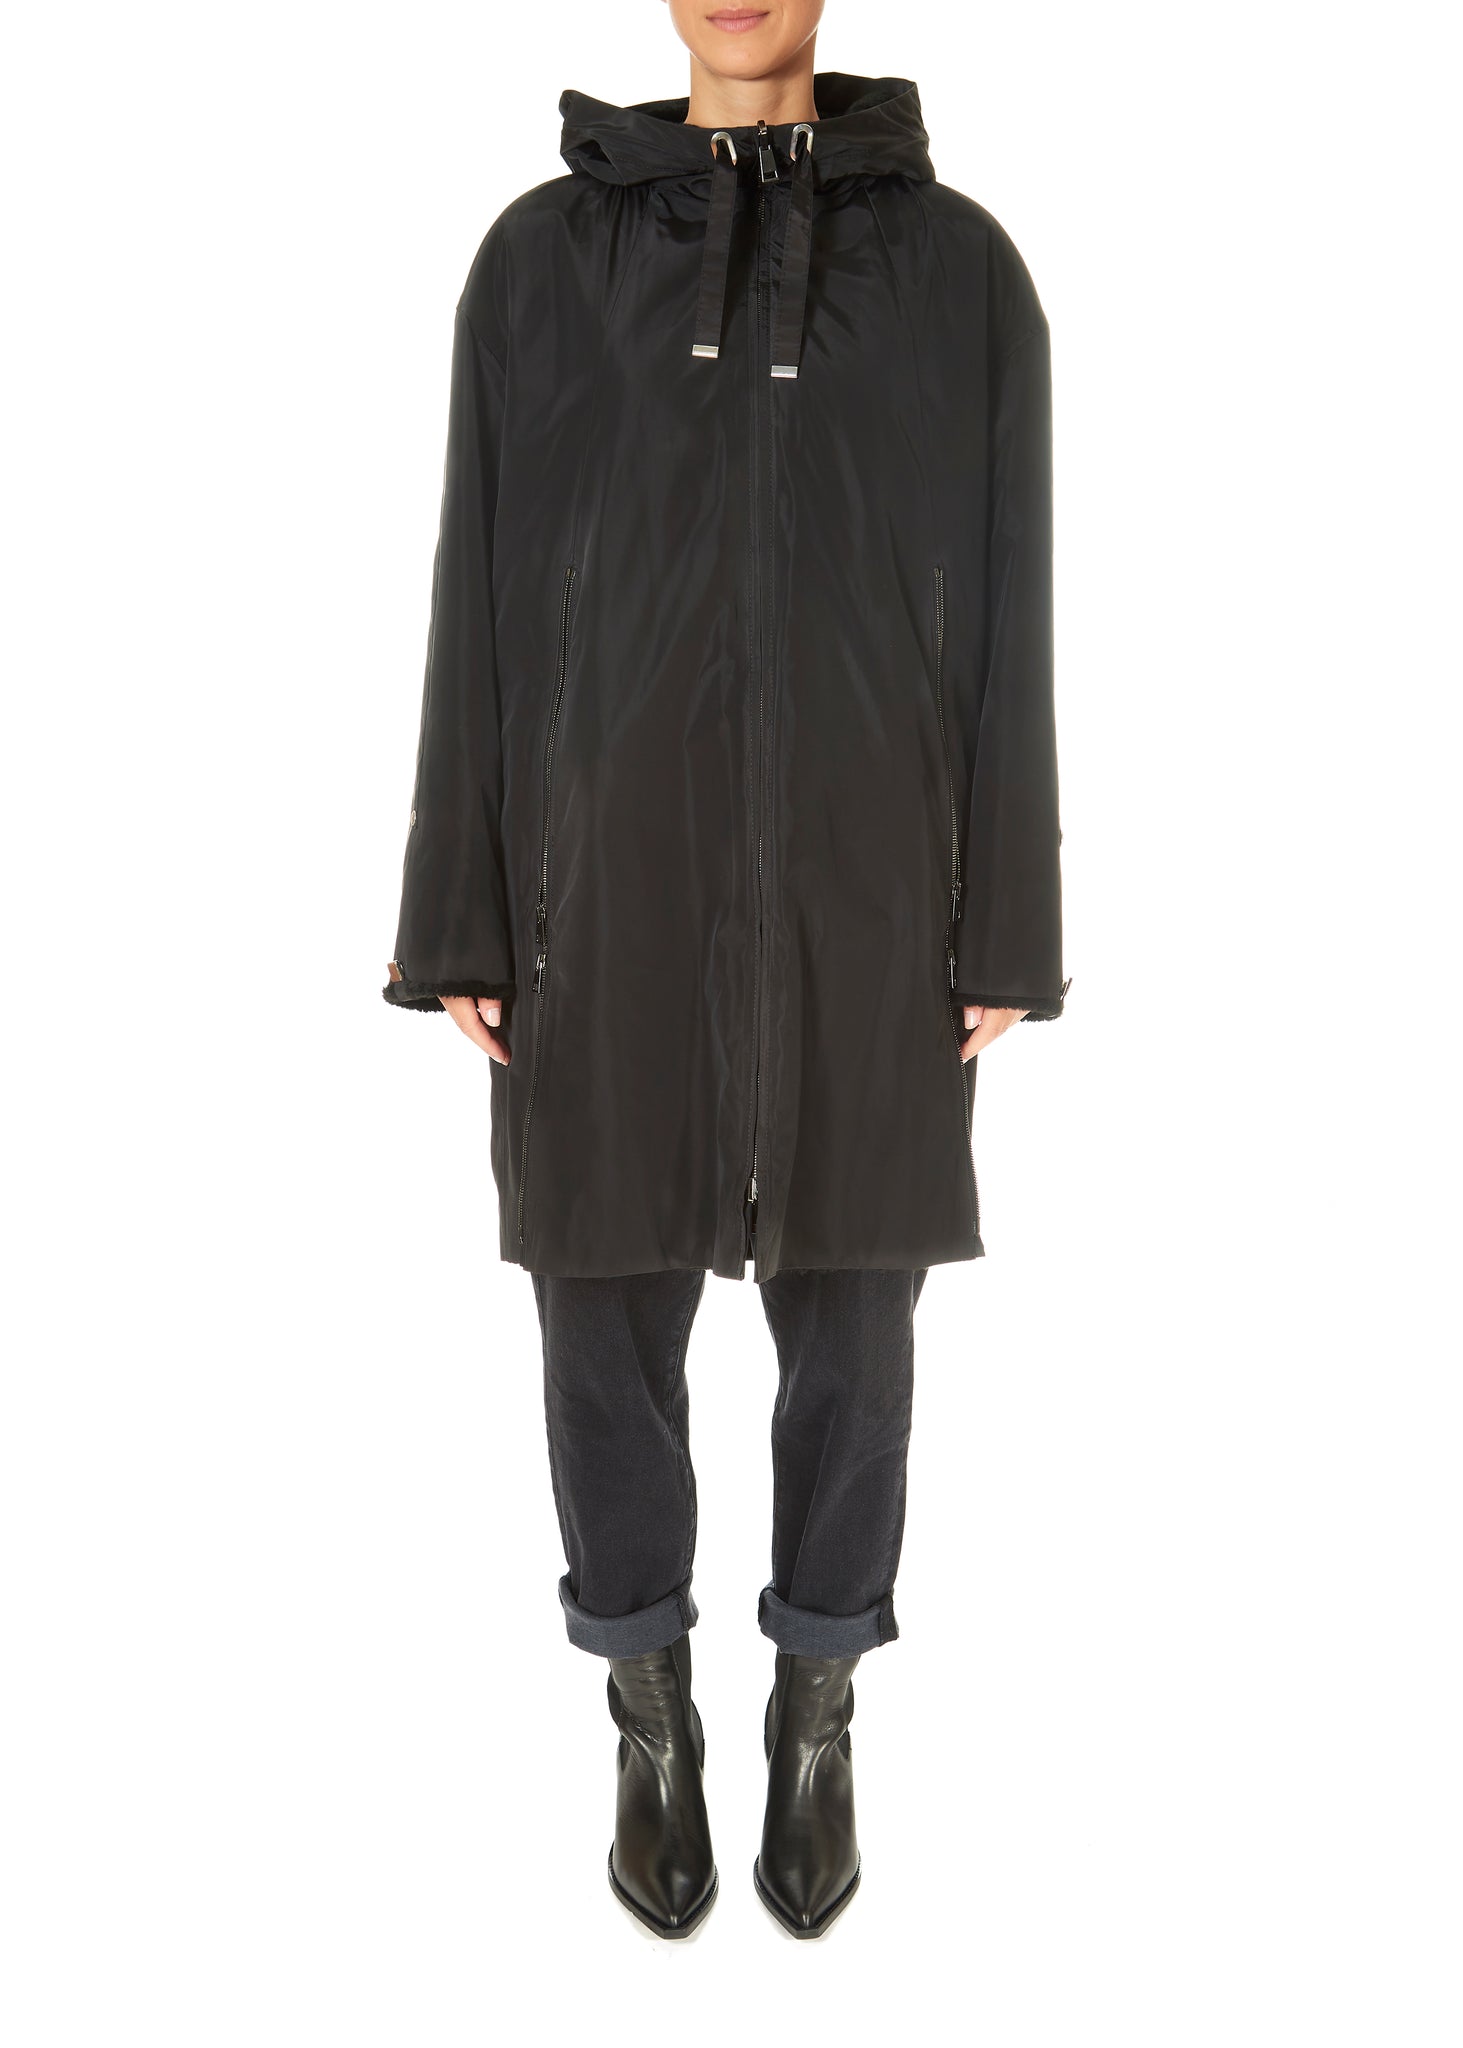 Suprema Black Reversible Shearling Raincoat